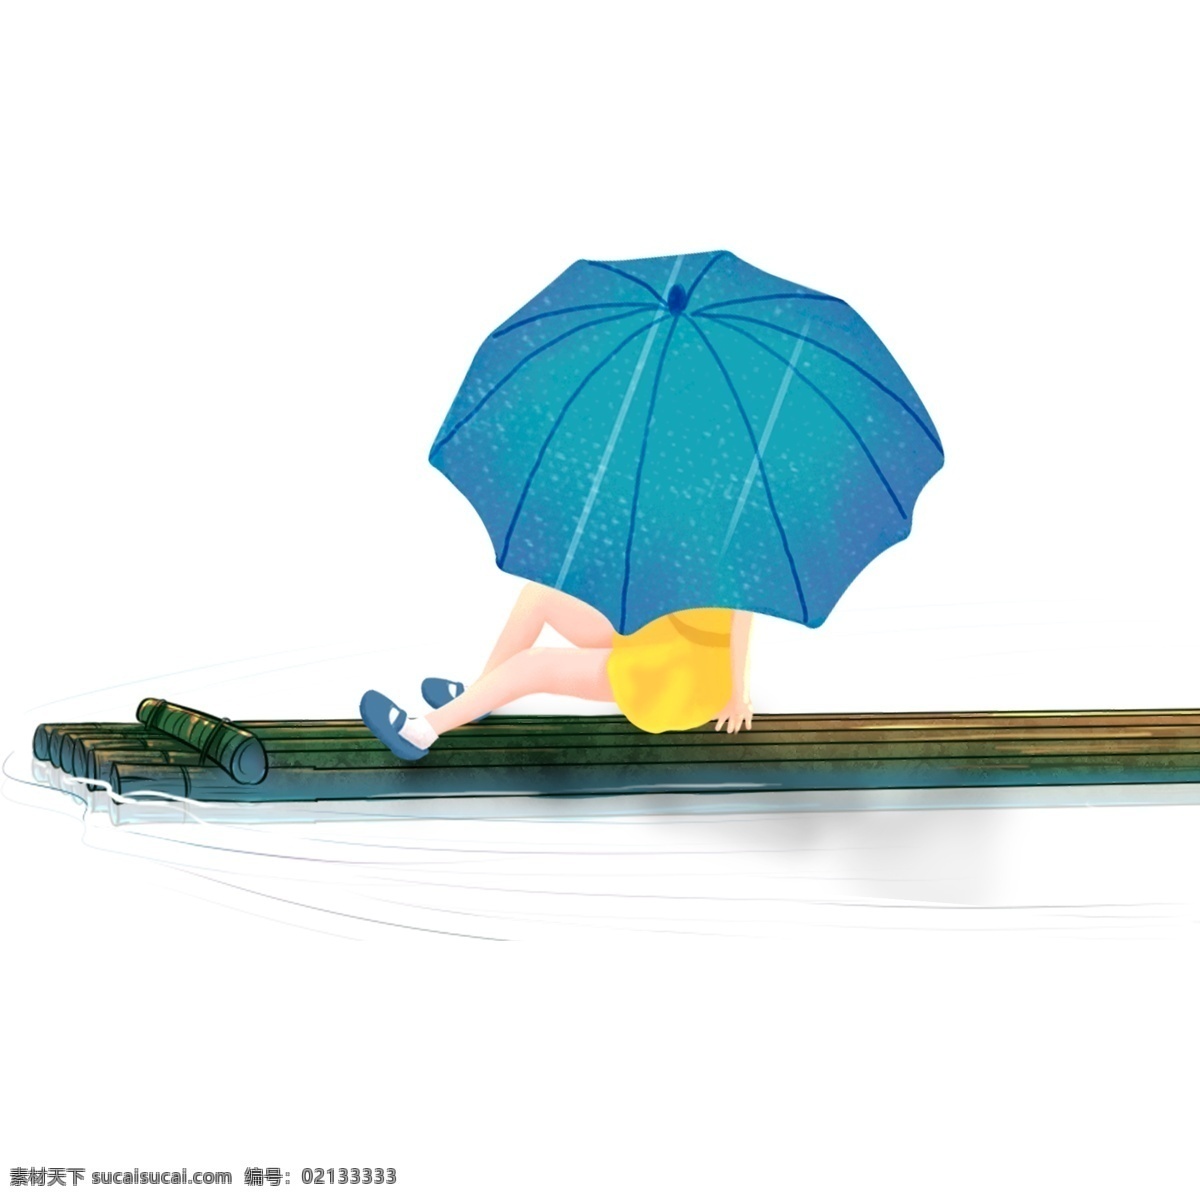 手绘 坐在 竹筏 上 撑 伞 女孩 卡通 清新 泛舟 撑伞 人物 插画